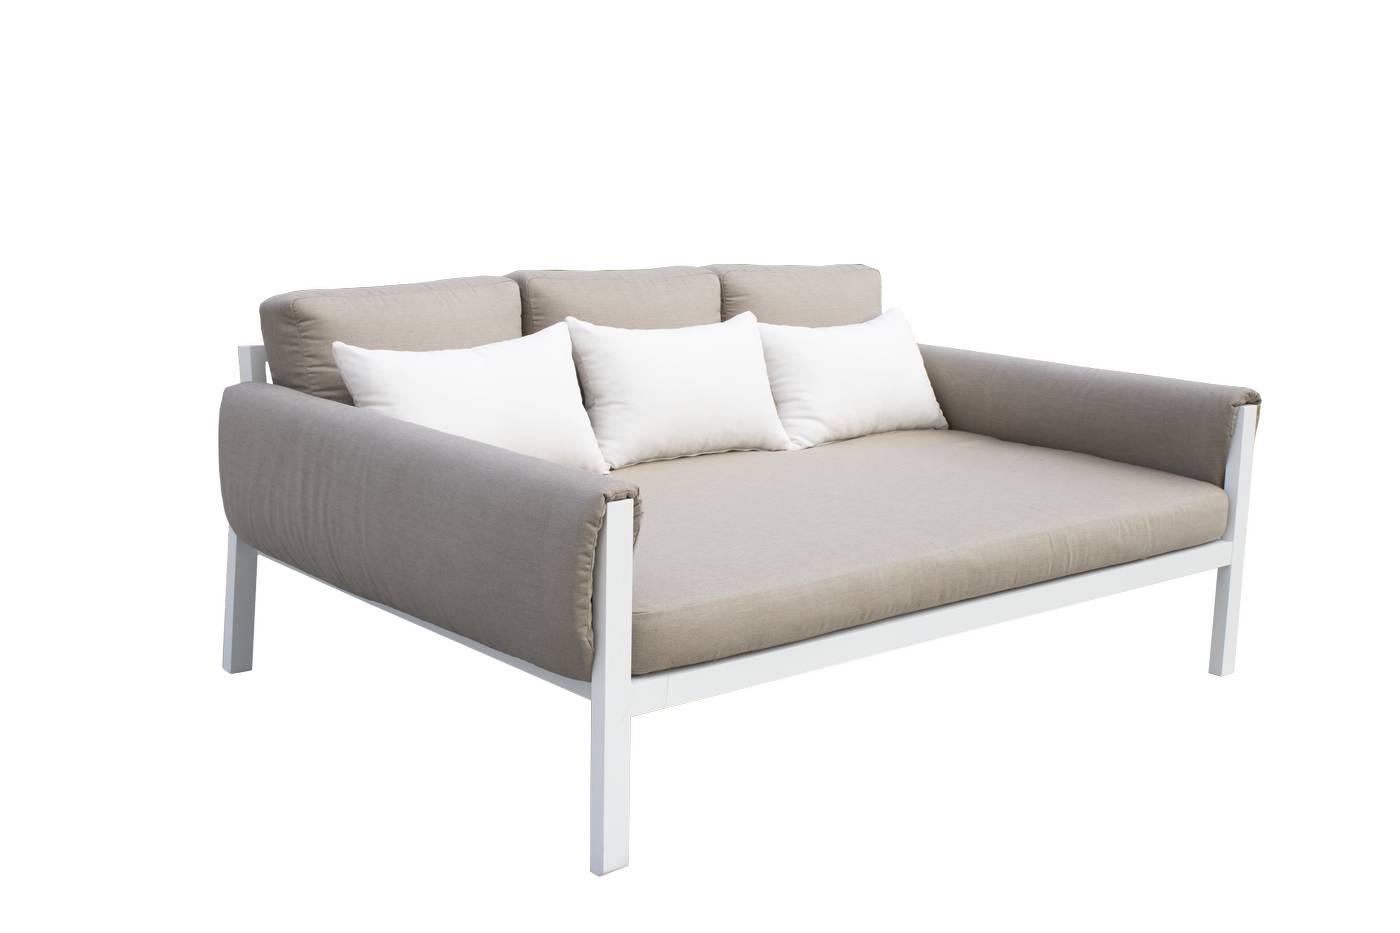 Sofá/cama 3 plazas, con opción de cojines en los brazos. En color: blanco, antracita, marrón, champagne o plata.